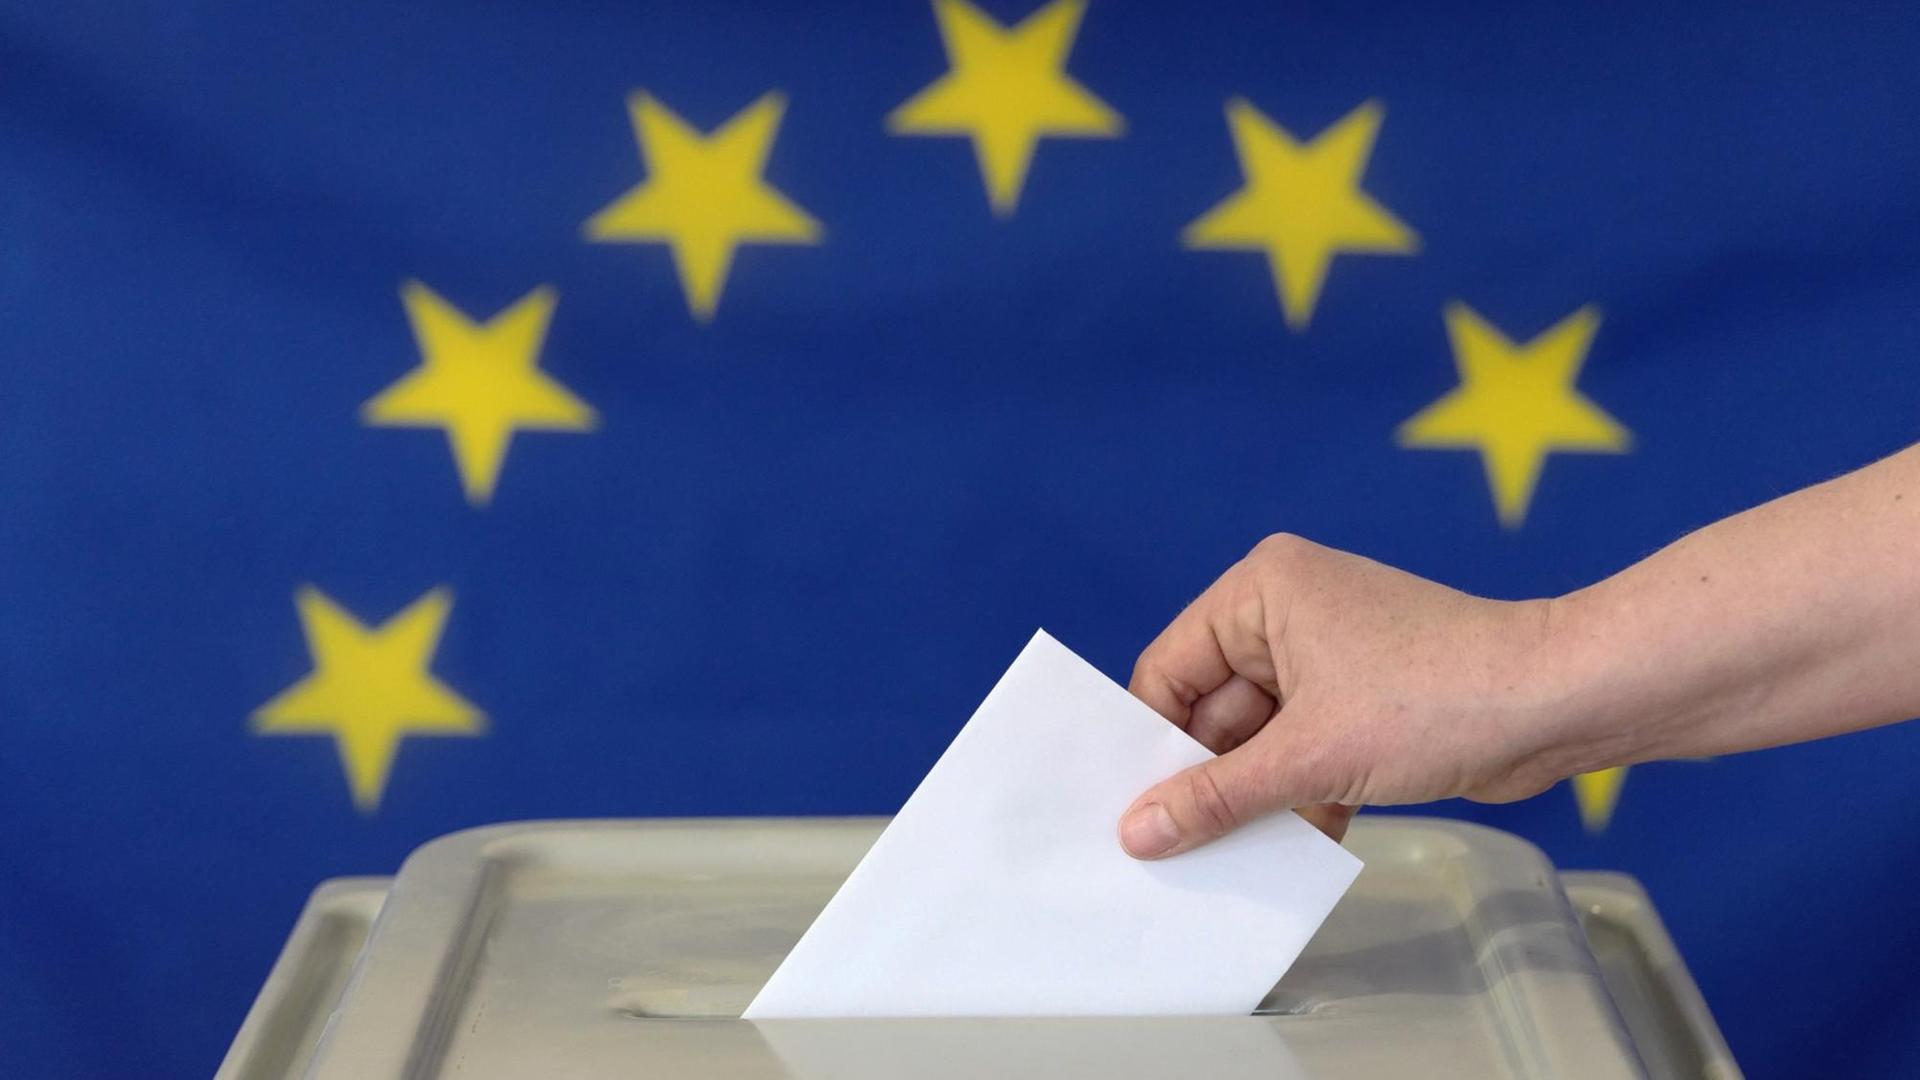 Eine Hand steckt einen Umschlag in eine Wahlurne vor der Europafahne. Symbolfoto.